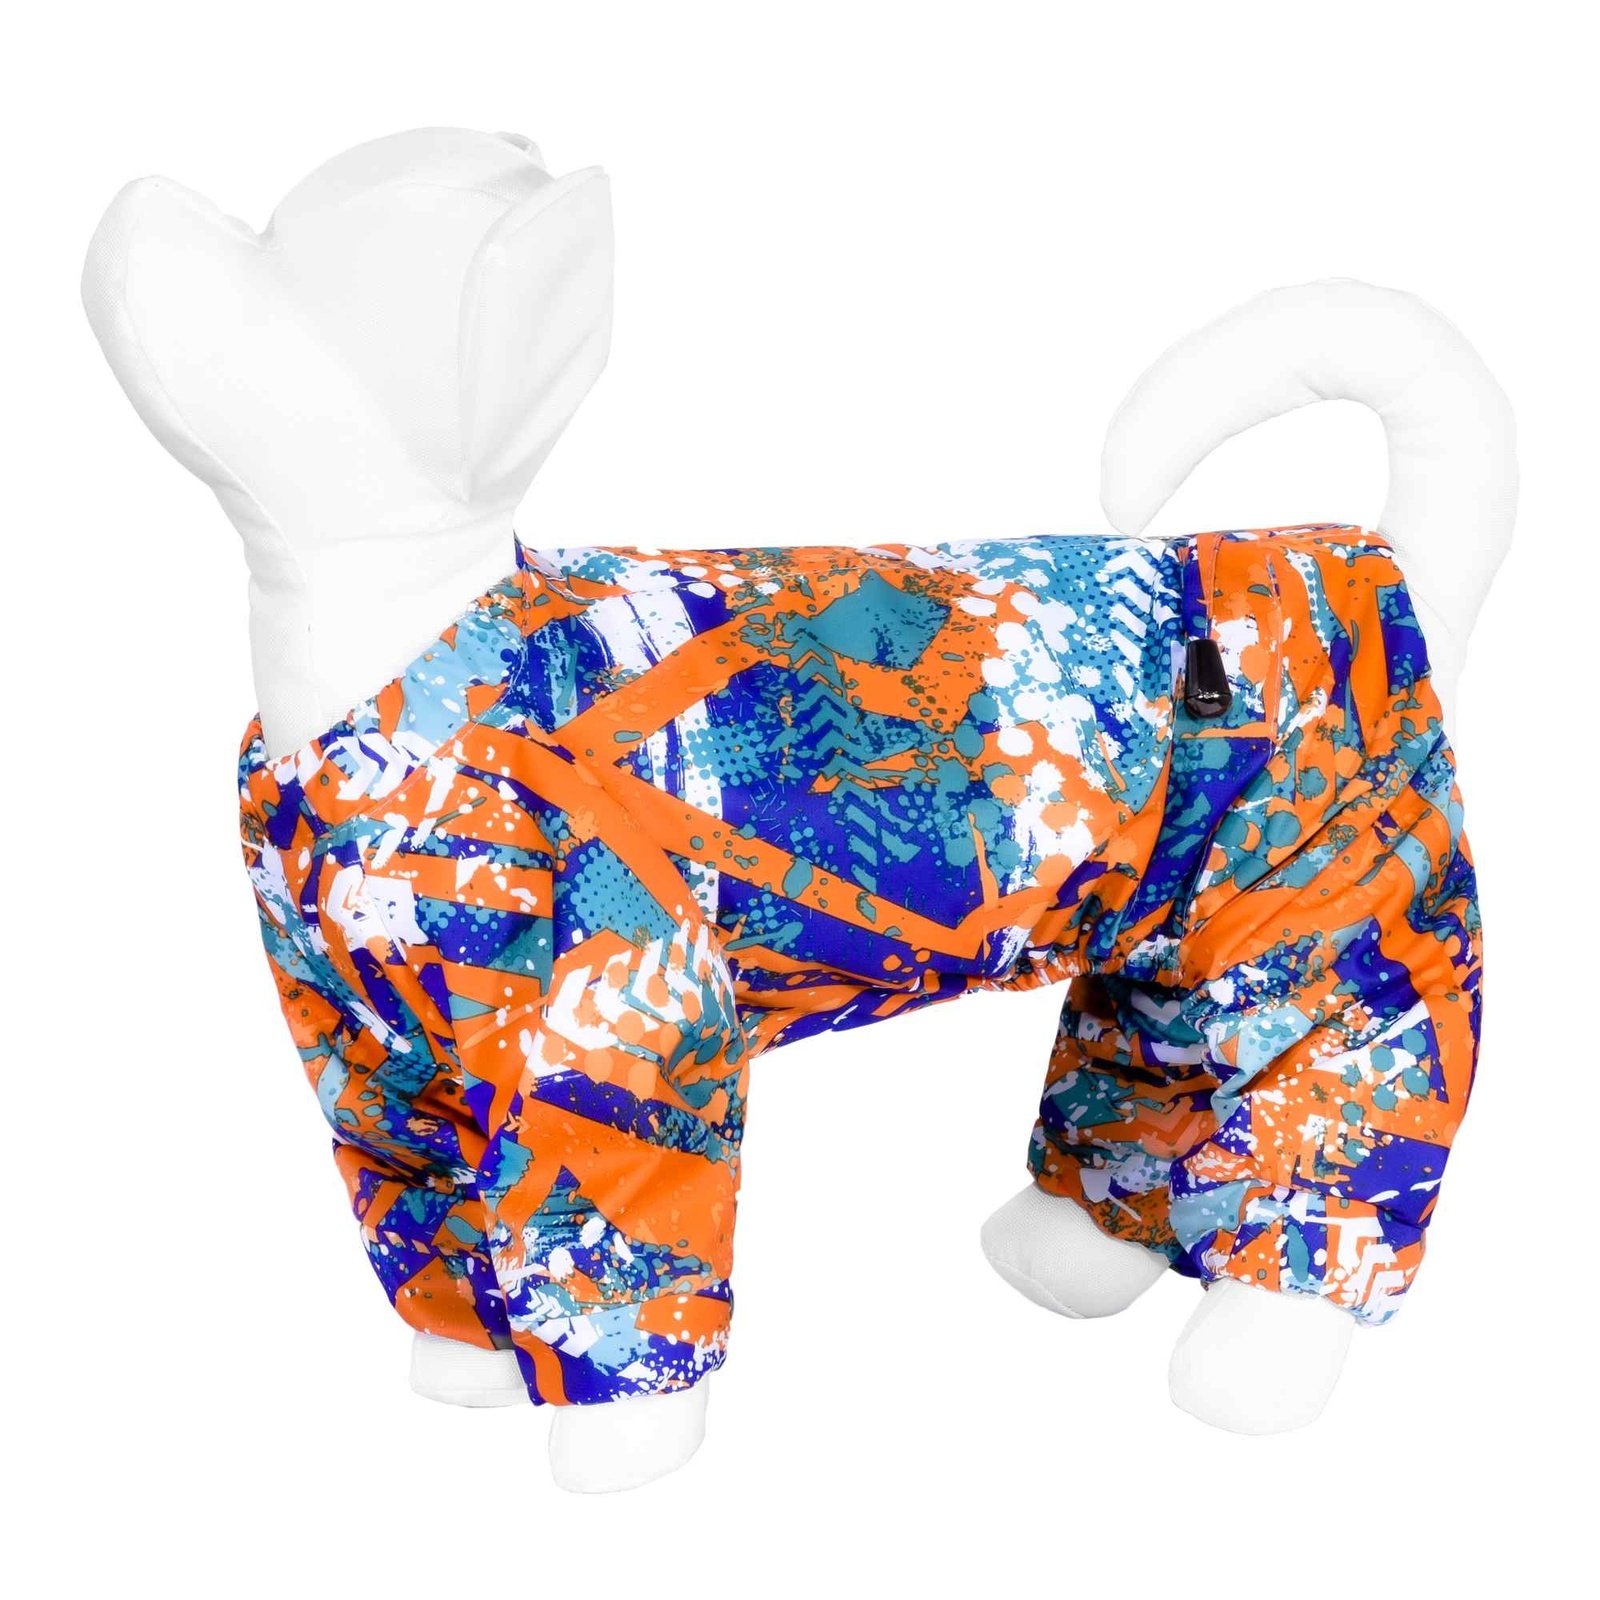 Yami-Yami одежда Yami-Yami одежда дождевик для собаки с рисунком «Абстракция», оранжевый (80 г) yami yami одежда yami yami одежда дождевик для собаки с рисунком абстракция оранжевый l